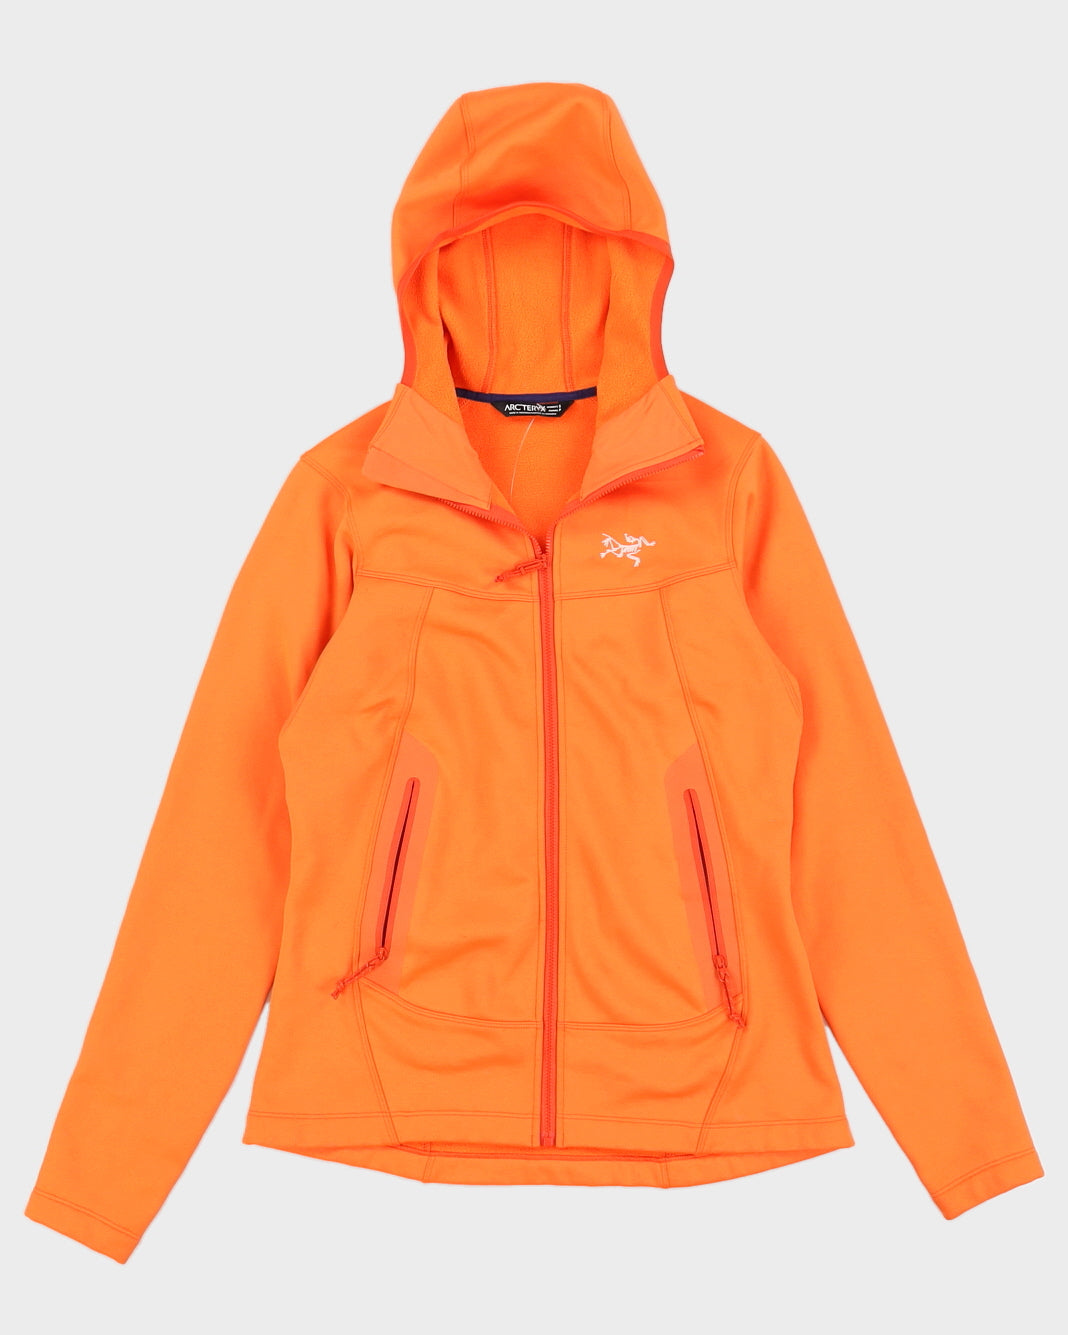 Arc'teryx Orange Full Zip Fleece - S